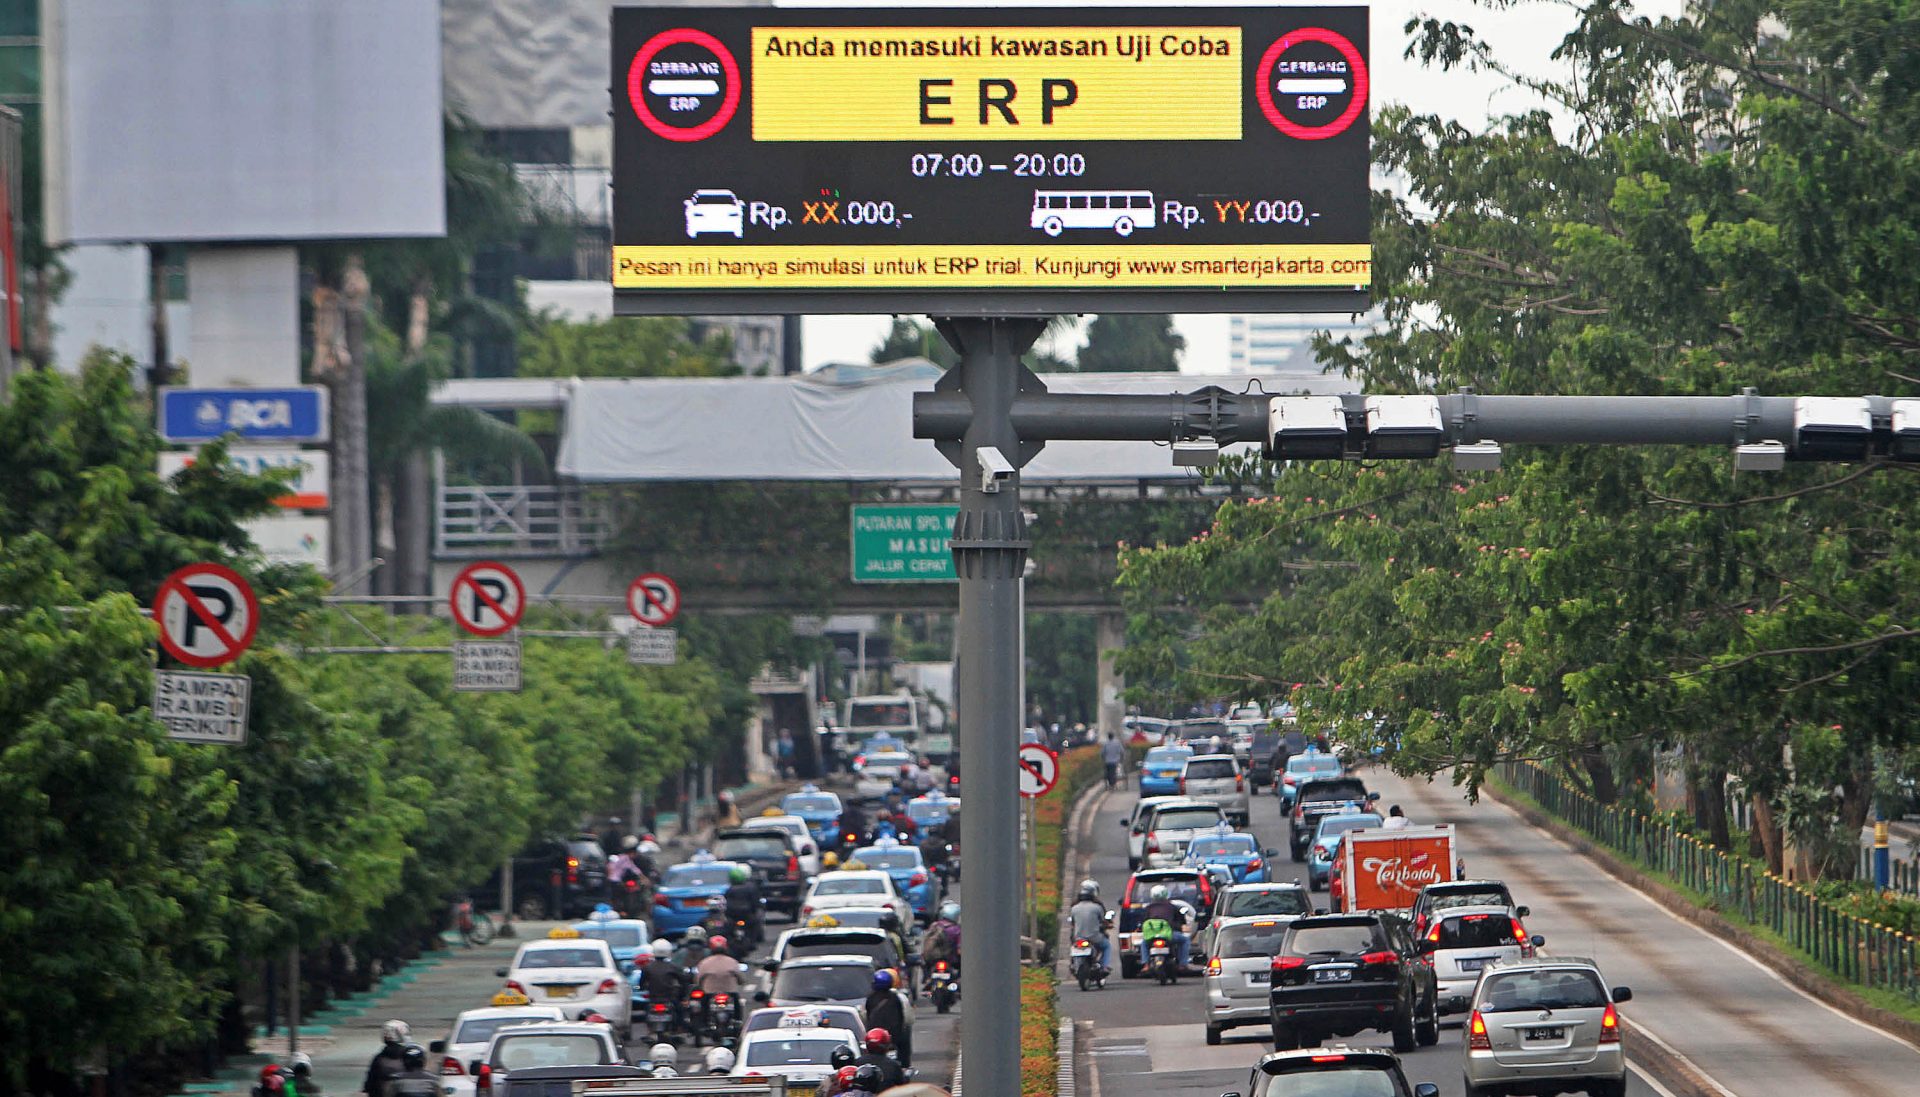 Solusi Macet Di Jakarta, Pakar: Tidak Perlu Bangun Infrastruktur dan Lupakan ERP